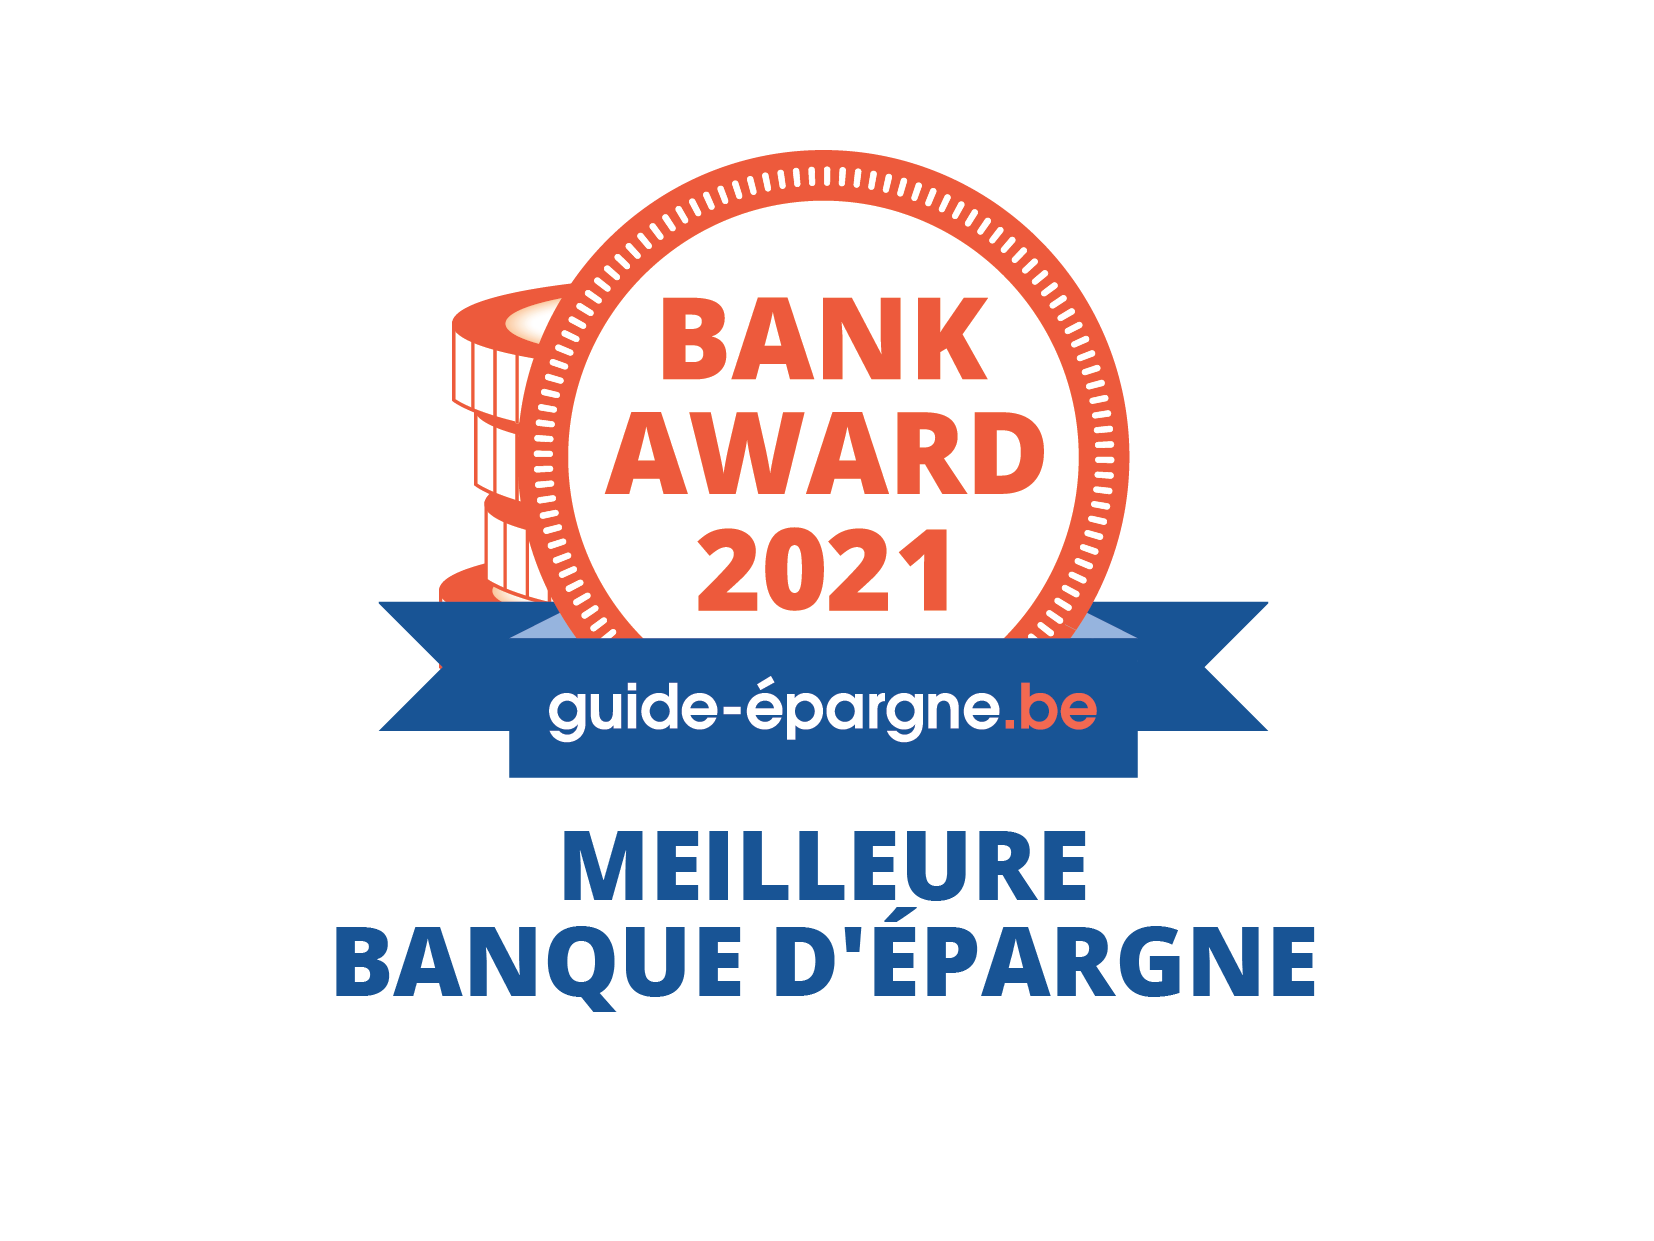 Bank Award 2021 guide-épargne.be - Meilleure banque d'épargne